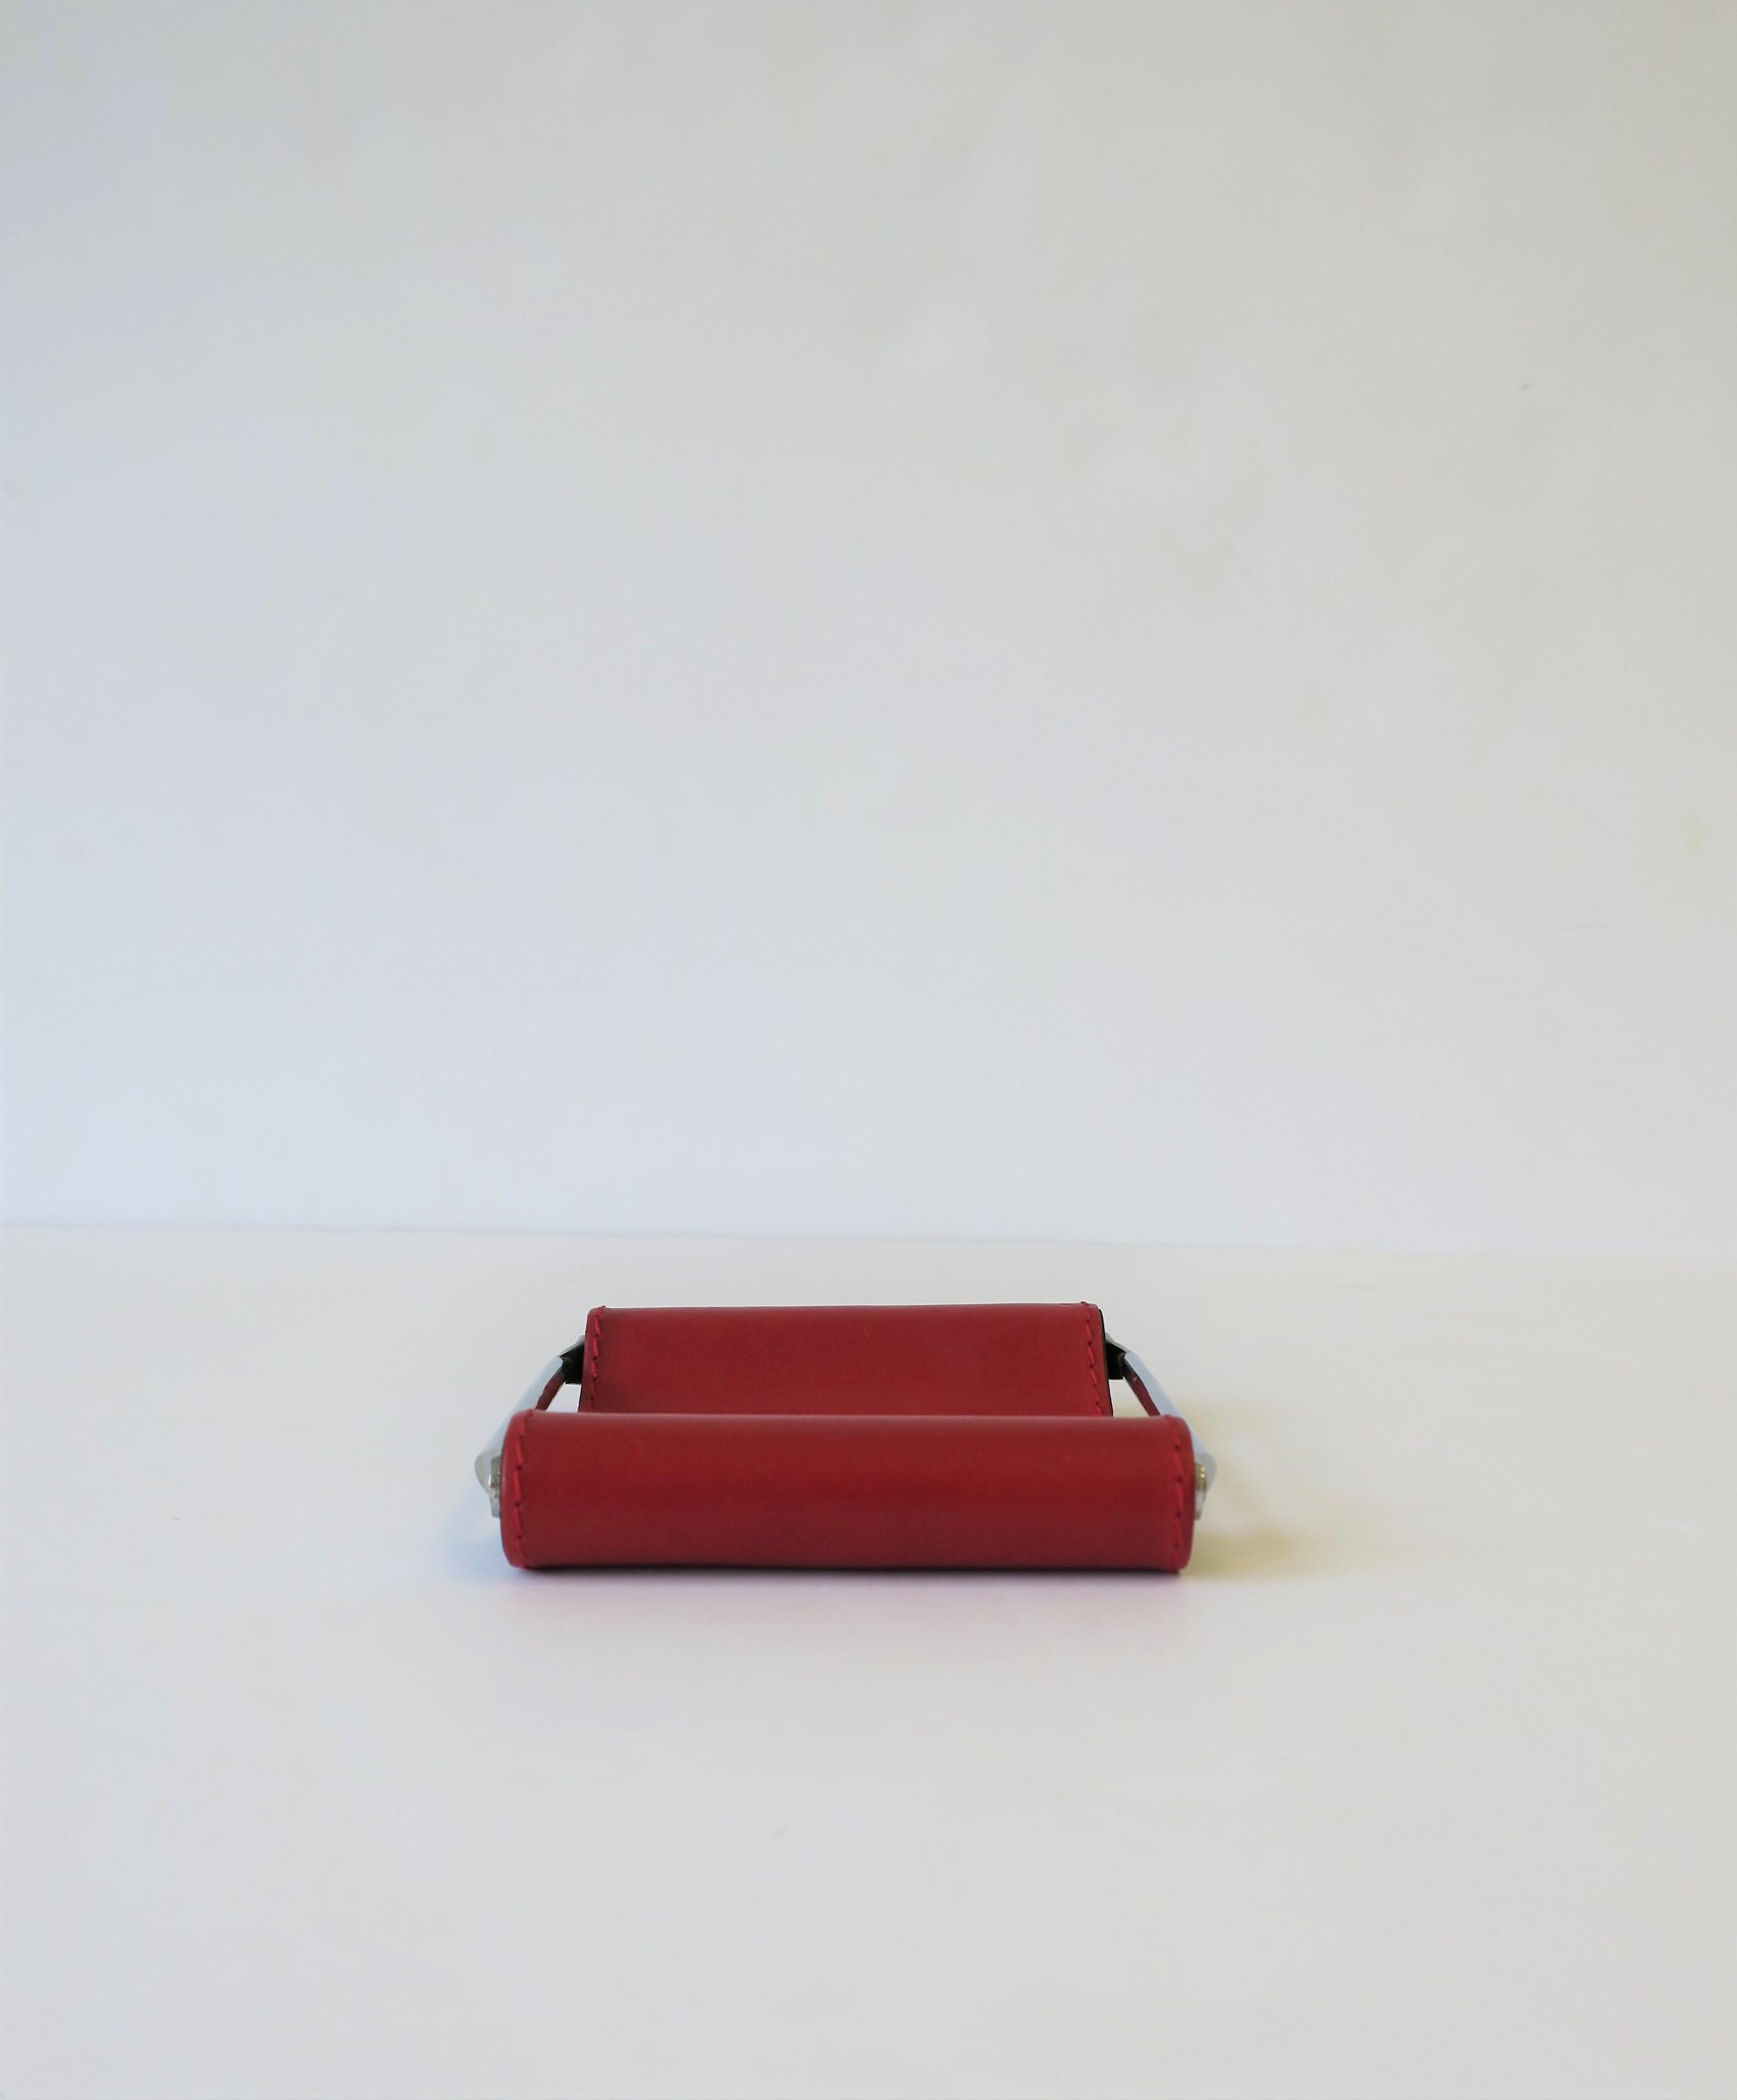 Italian Red Leather Jewelry Dish Vide-Poche or Desk Vessel 5